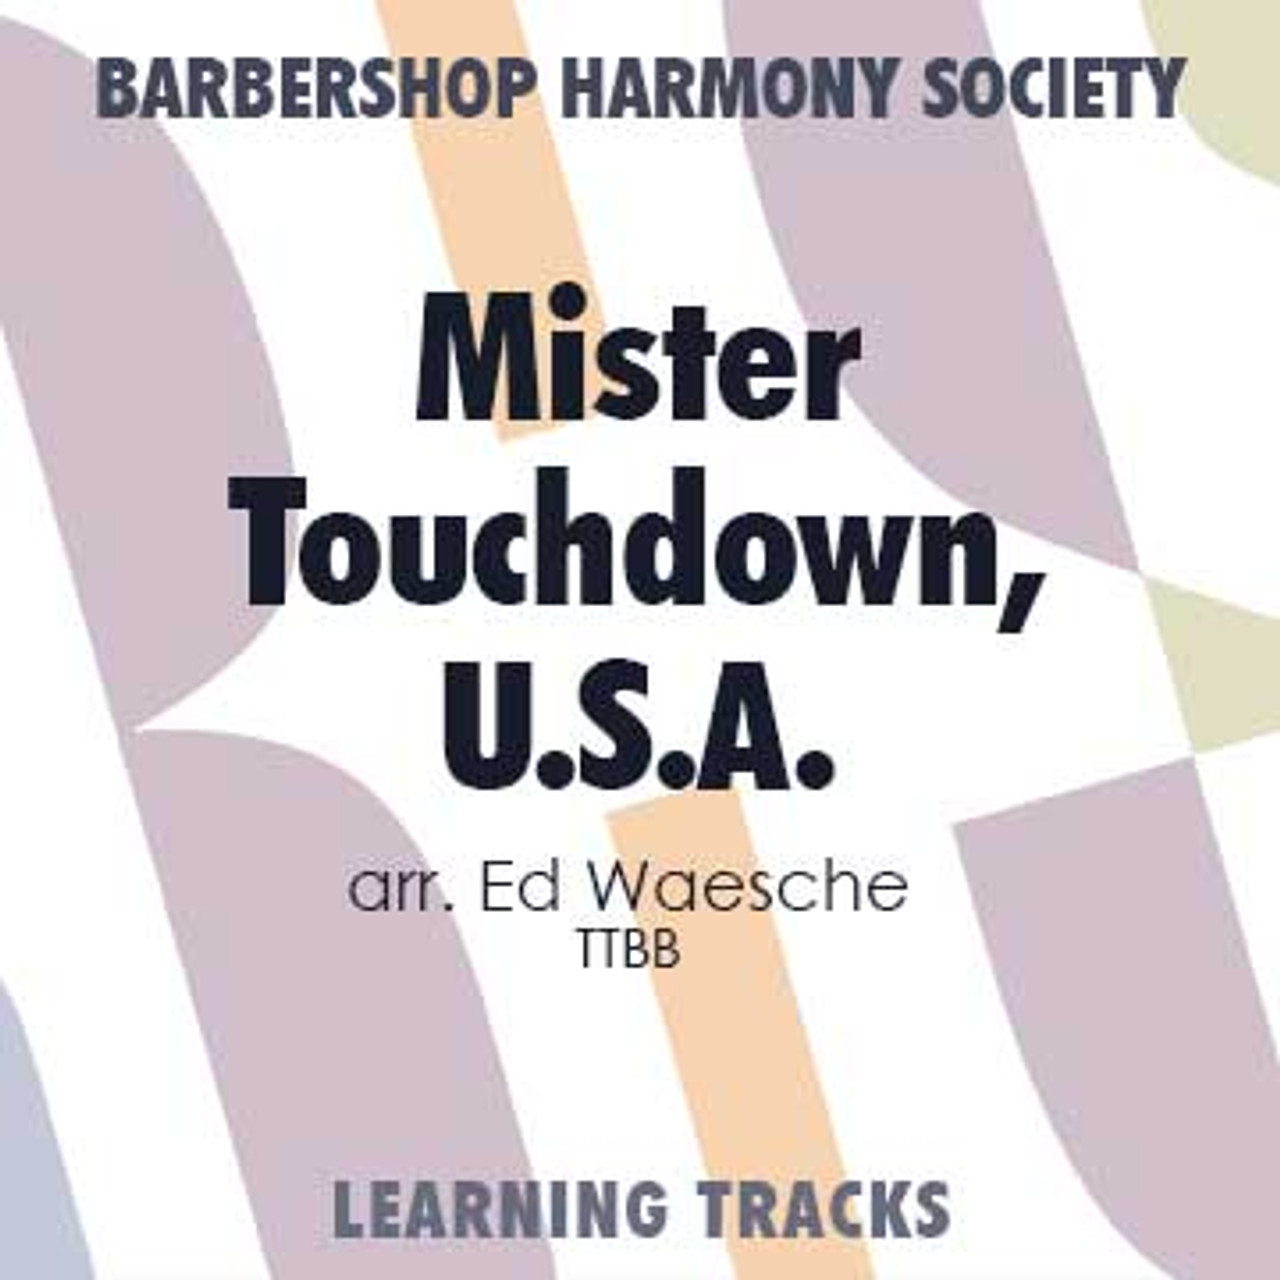 Mister Touchdown, U.S.A.(TTBB) (arr. Waesche) - Digital Learning Tracks for 7265